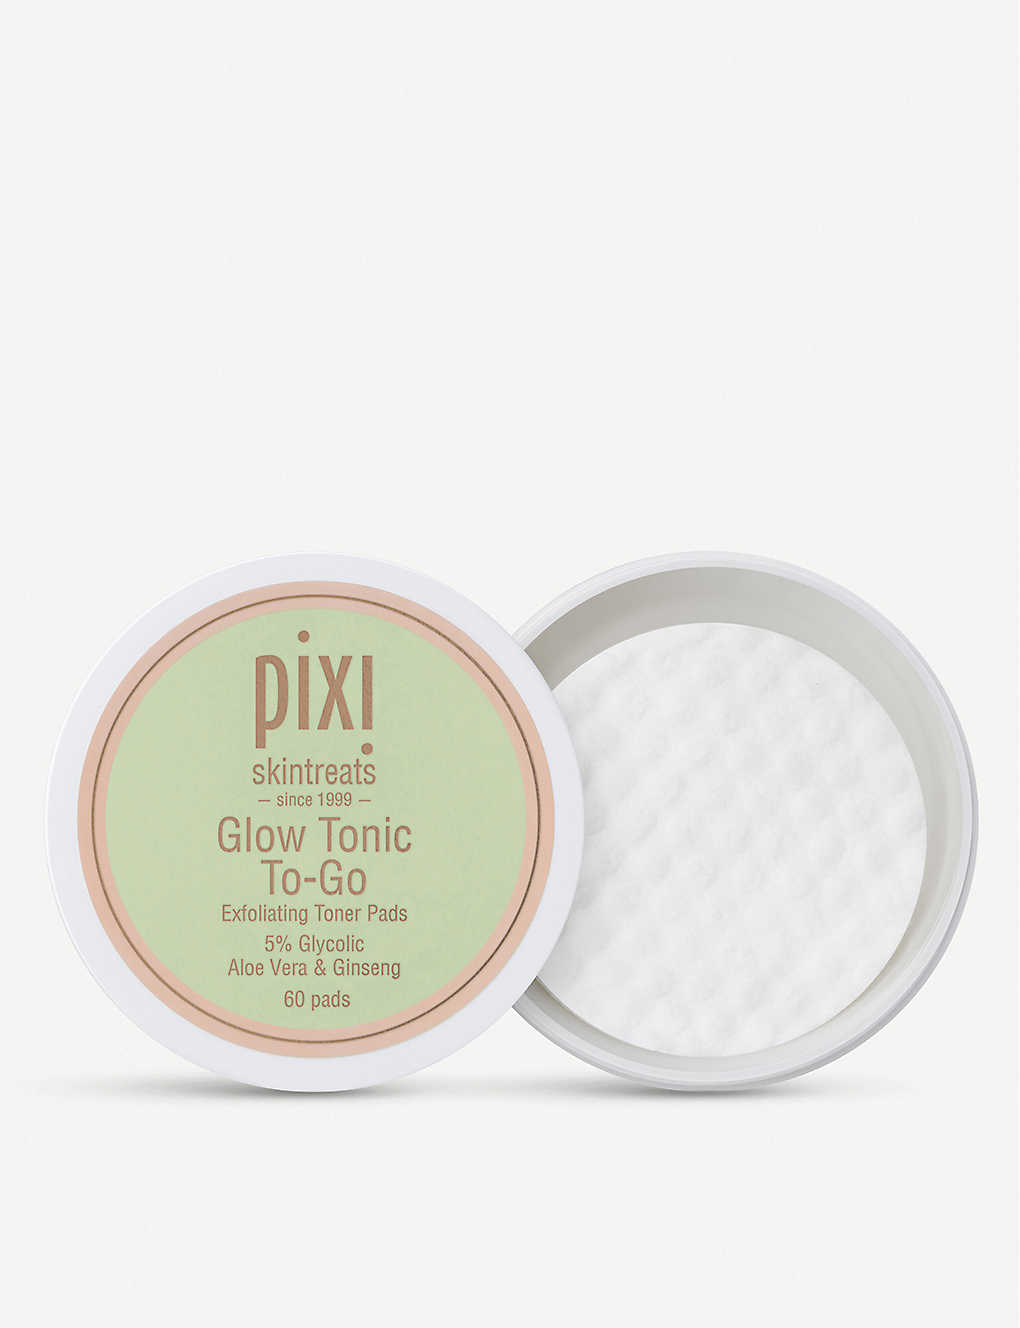 Pixi Glow Tonic To-go